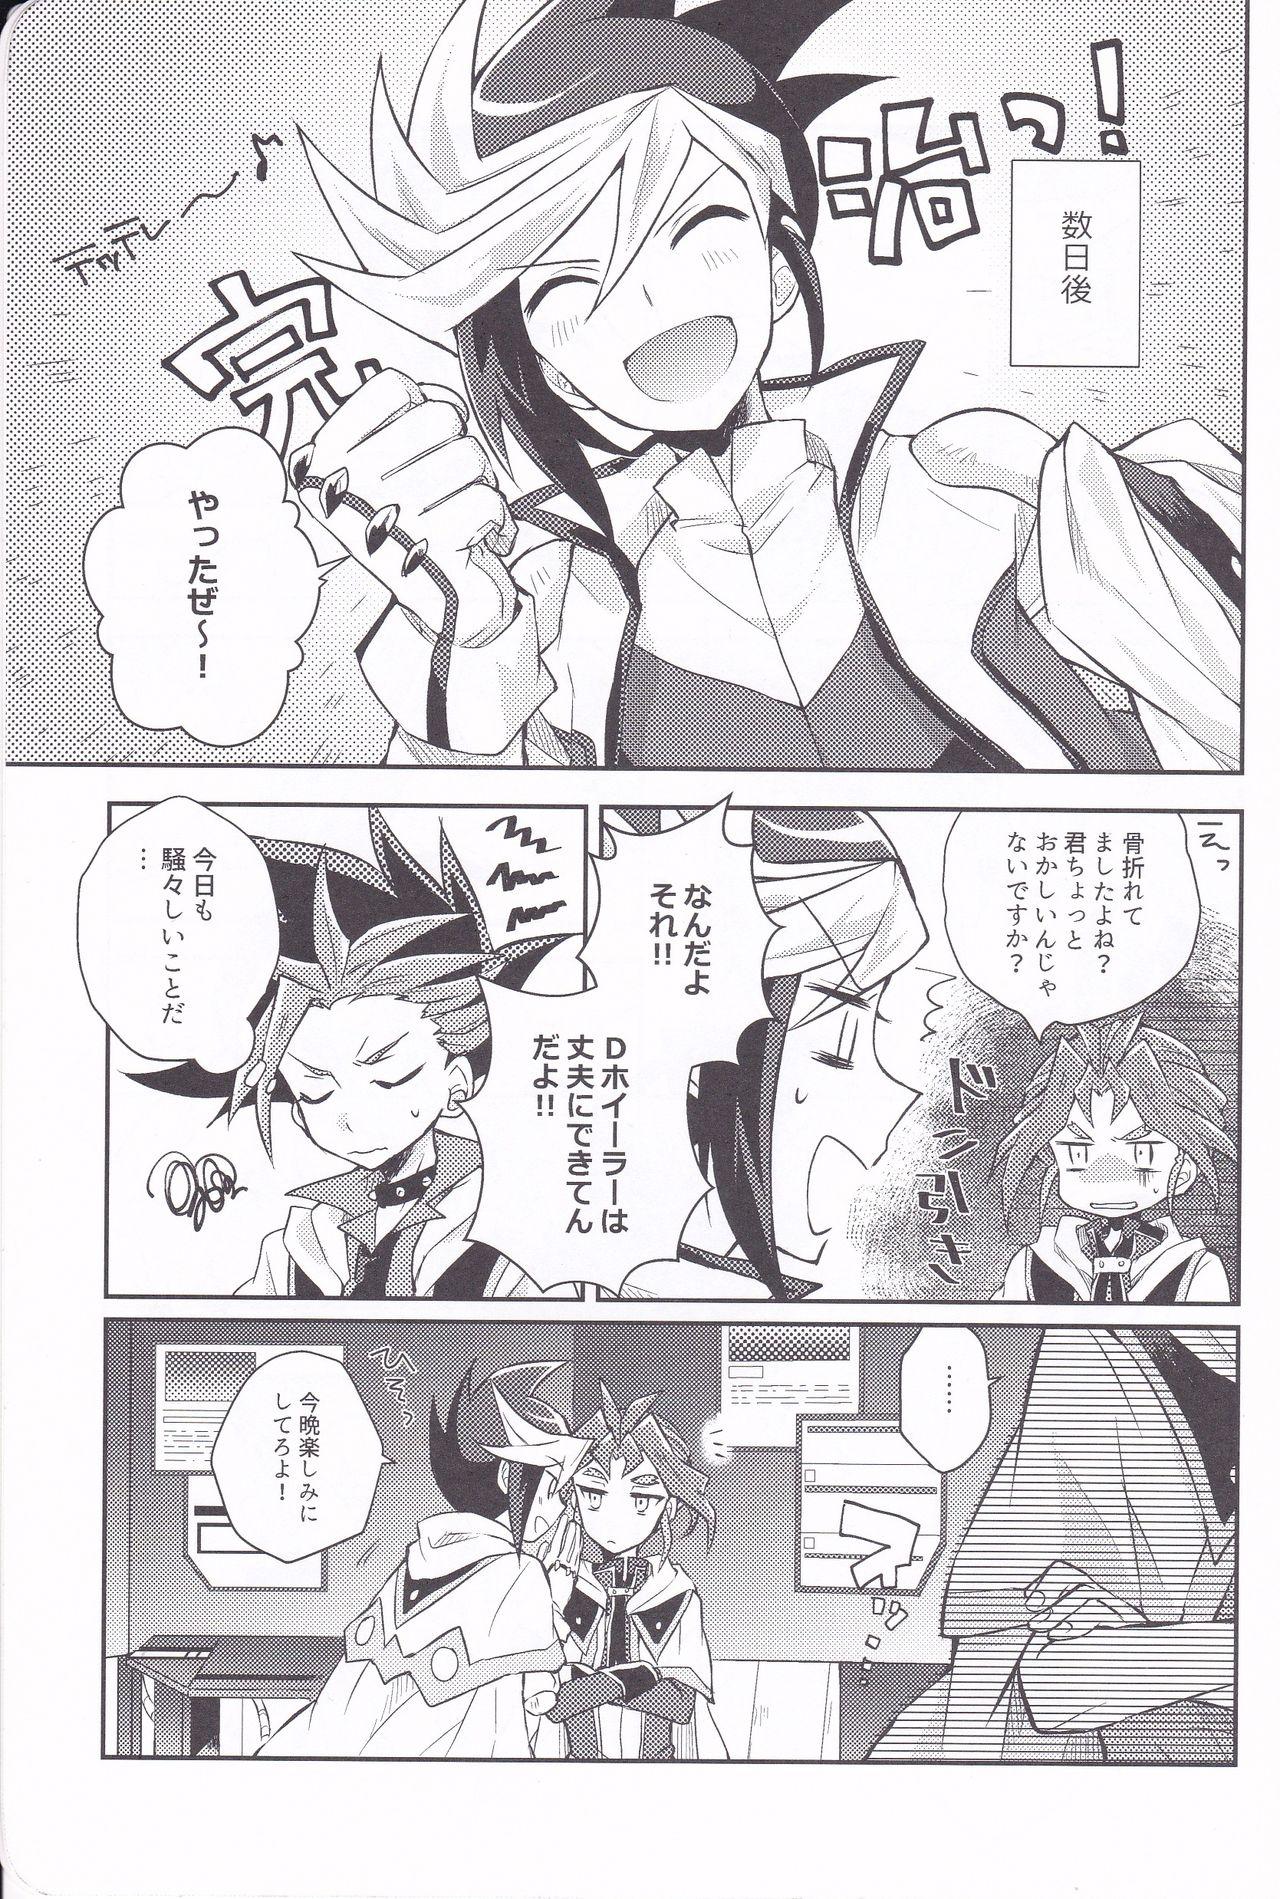 Weird Asu kara Kimi ga Tame - Yu-gi-oh arc-v Dick - Page 16